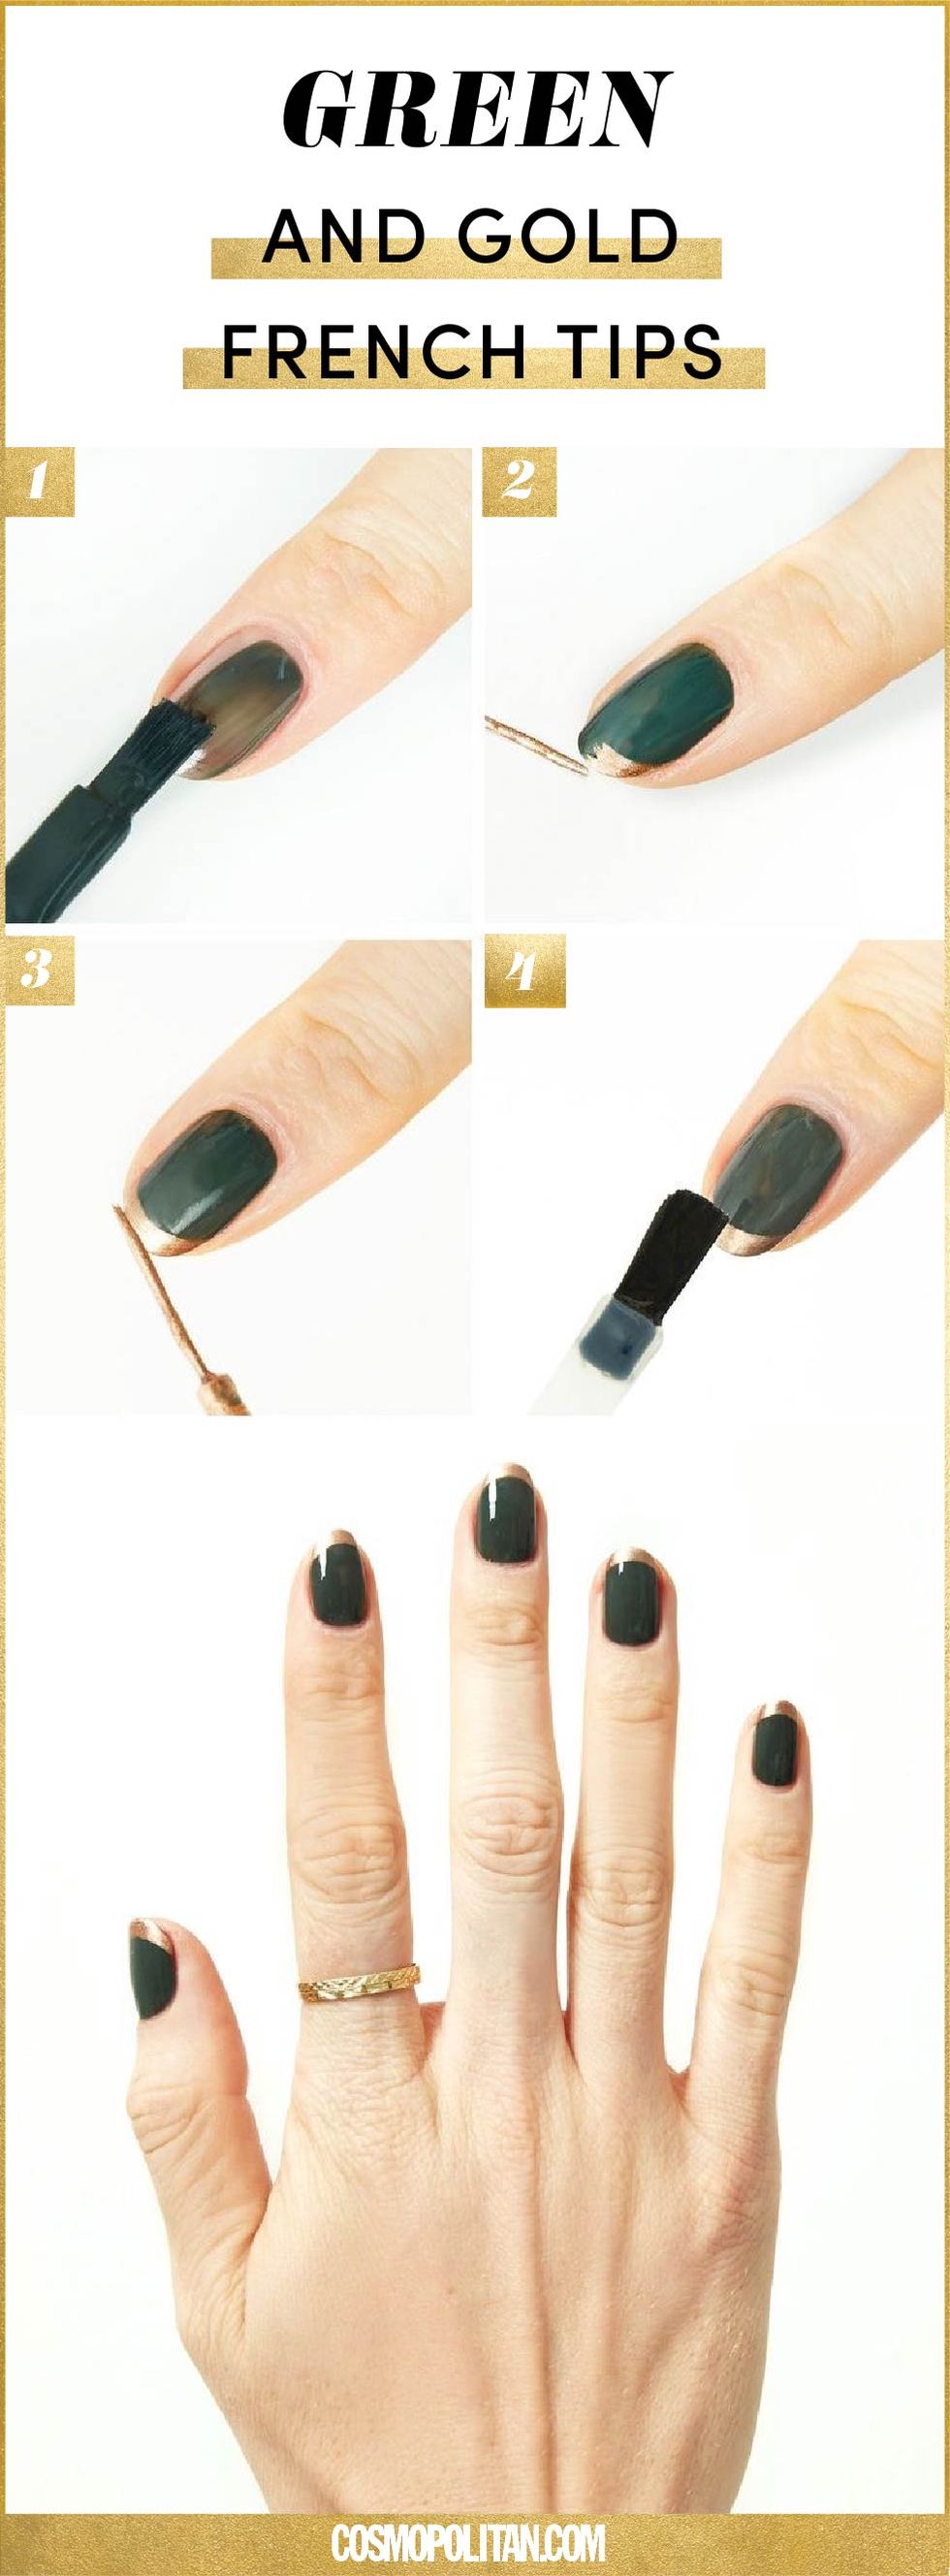 Nail, Nail polish, Finger, Green, Manicure, Nail care, Cosmetics, Hand, Material property, Thumb, 